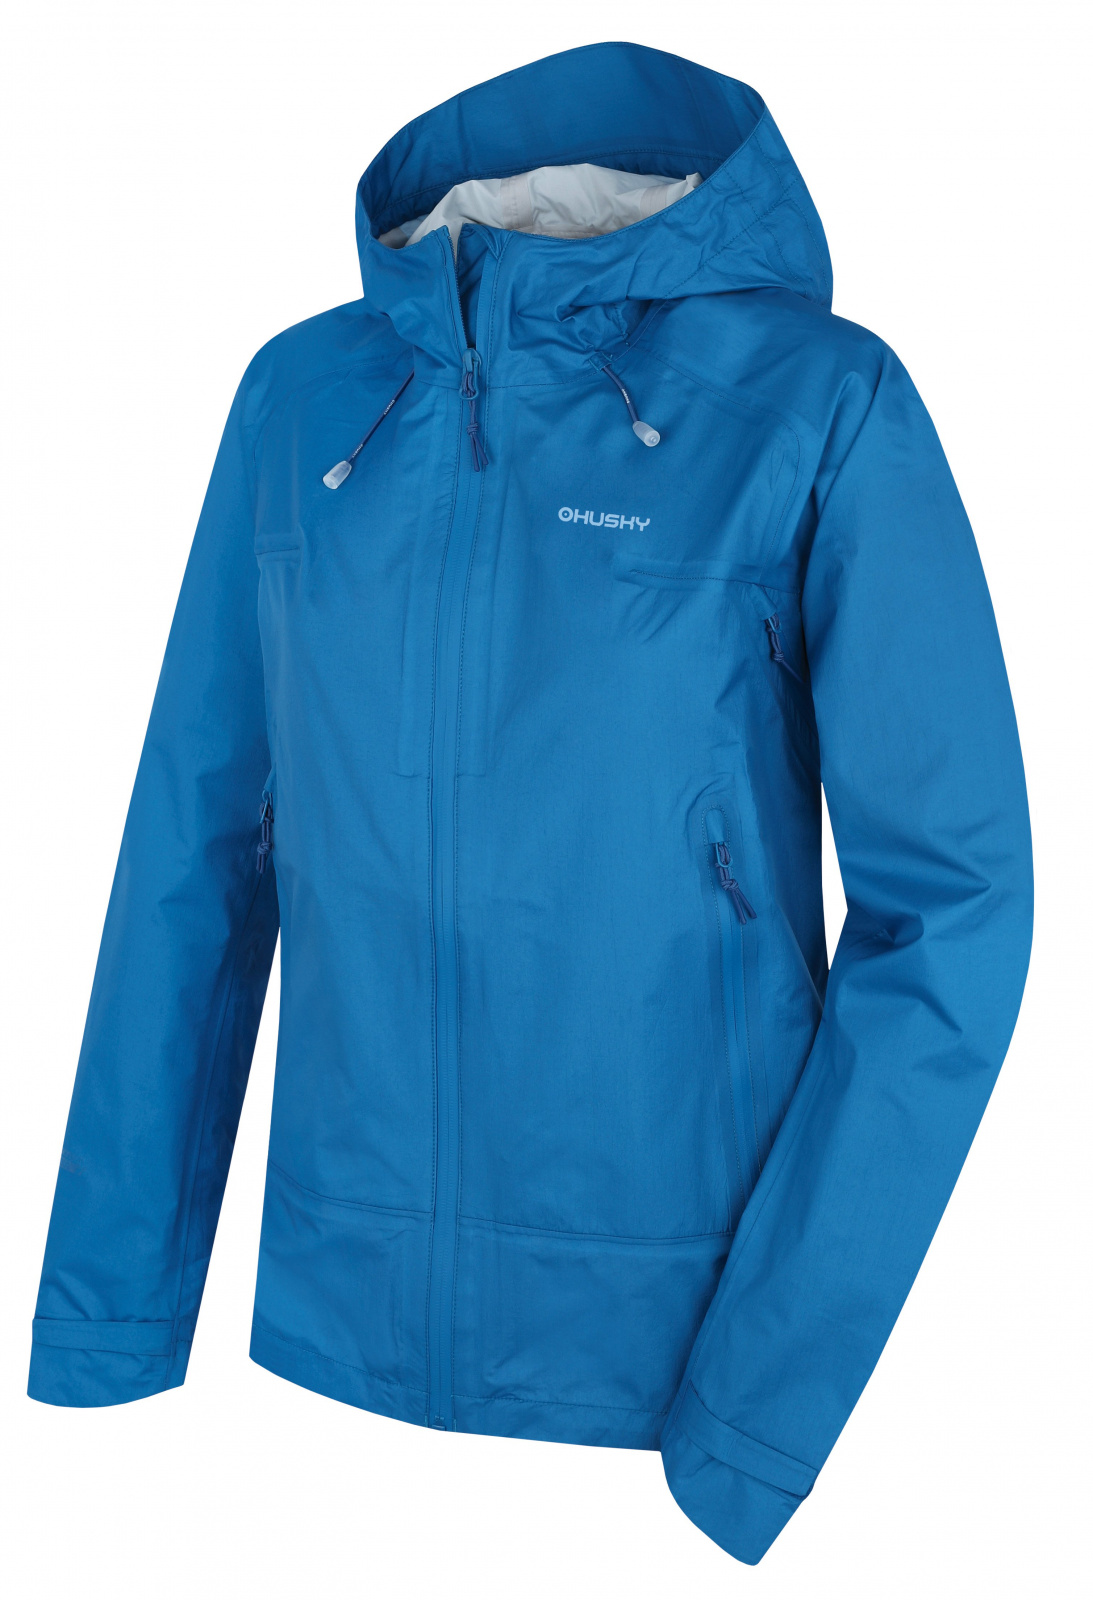 Husky Lamy L modrá, XL Dámska outdoorová bunda